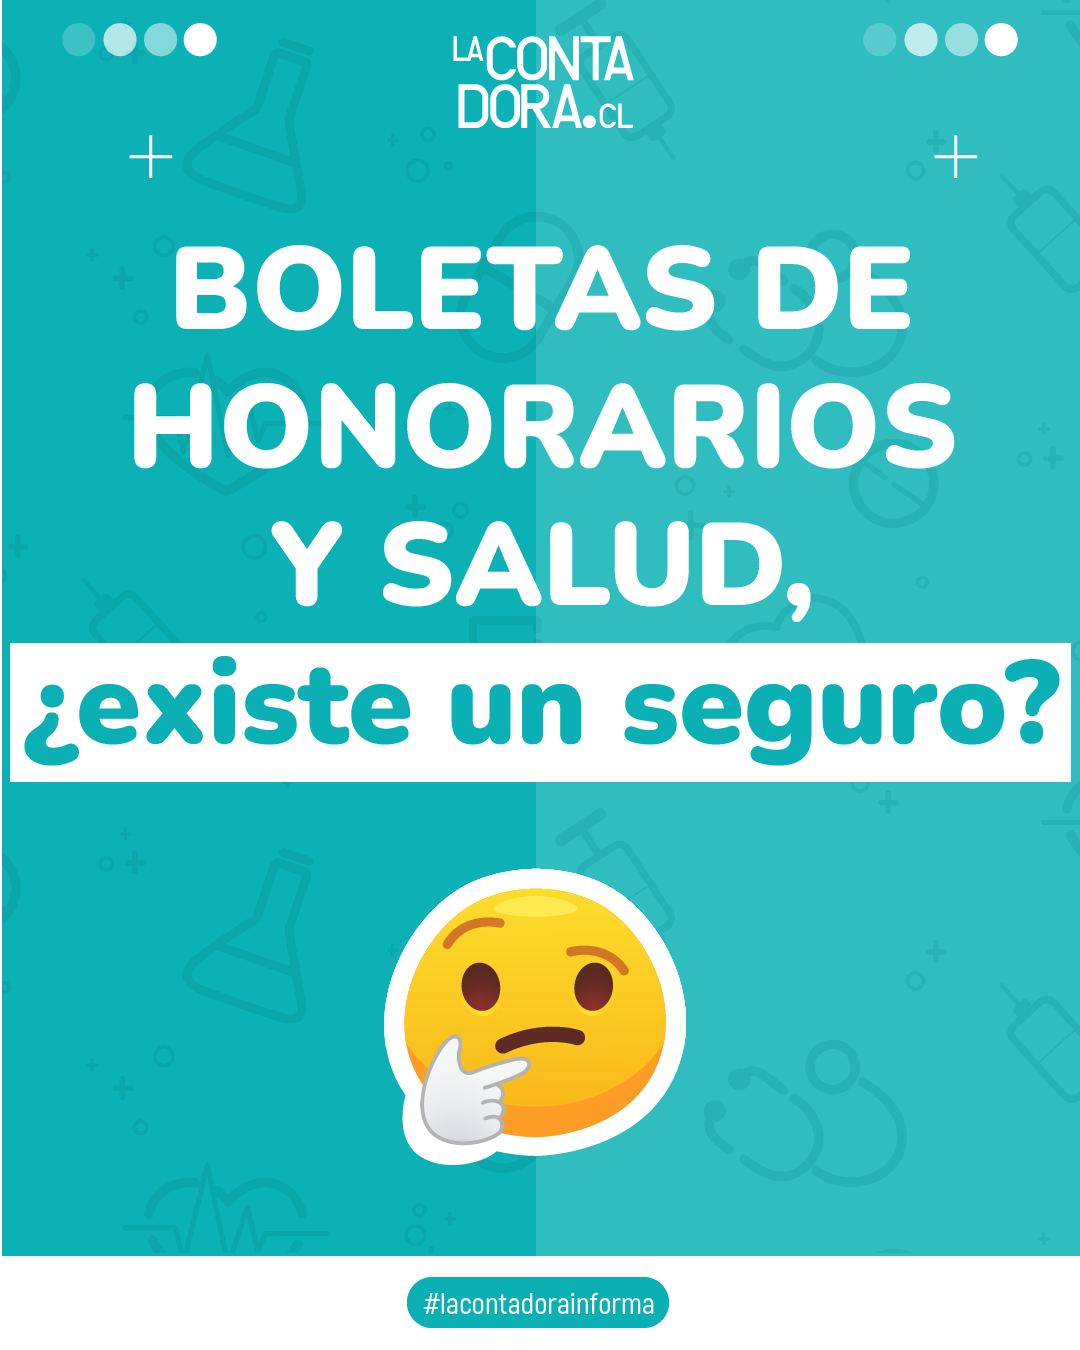 BOLETAS DE HONORARIOS Y SALUD, ¿EXISTE UN SEGURO?